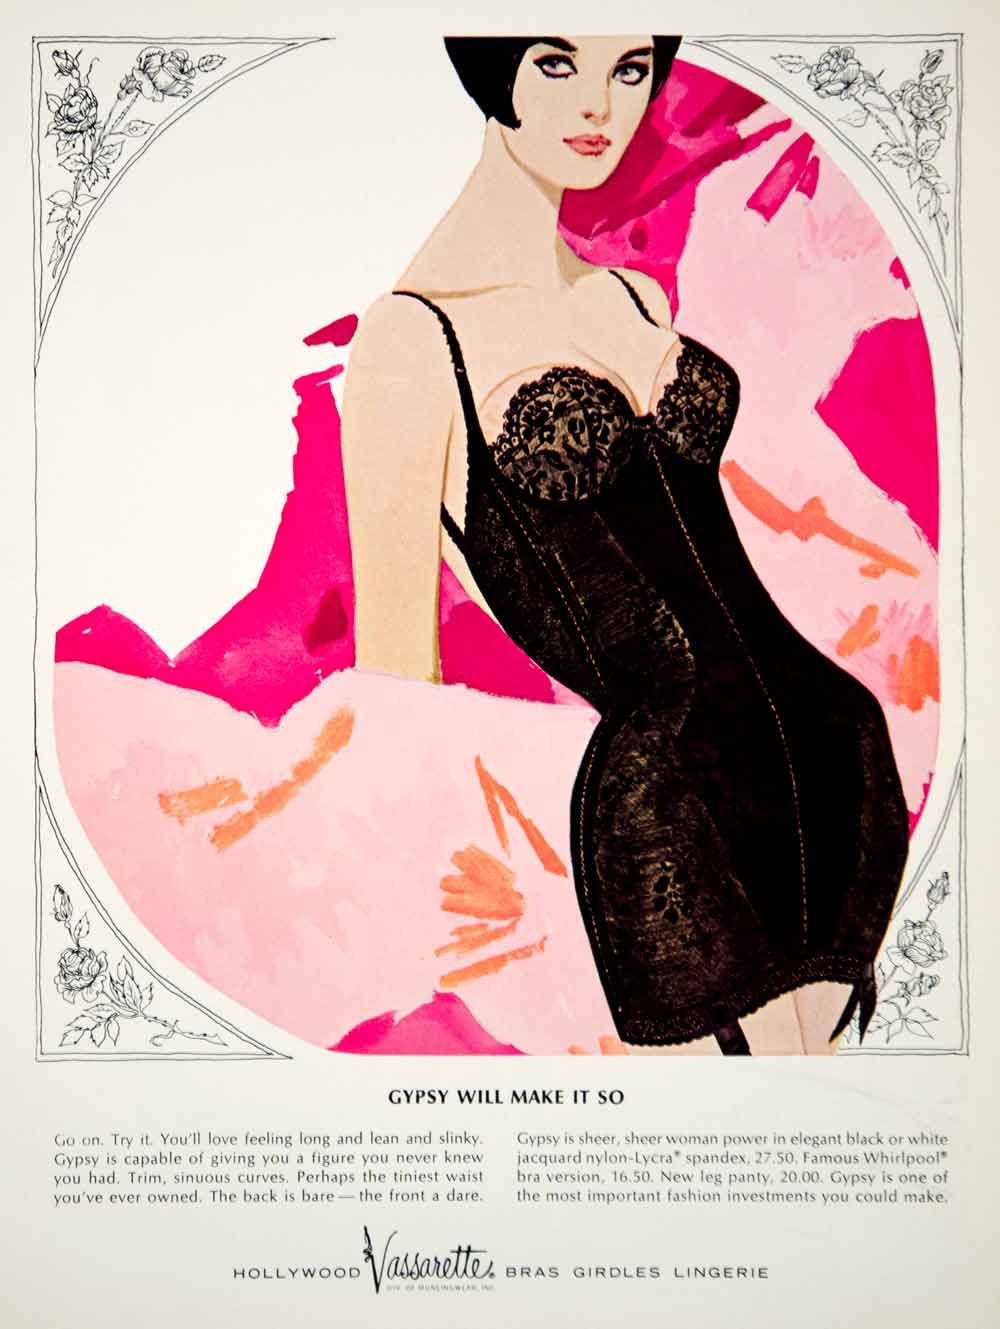 60's Hollywood Vassarette 2-Page Lingerie Ad 1967